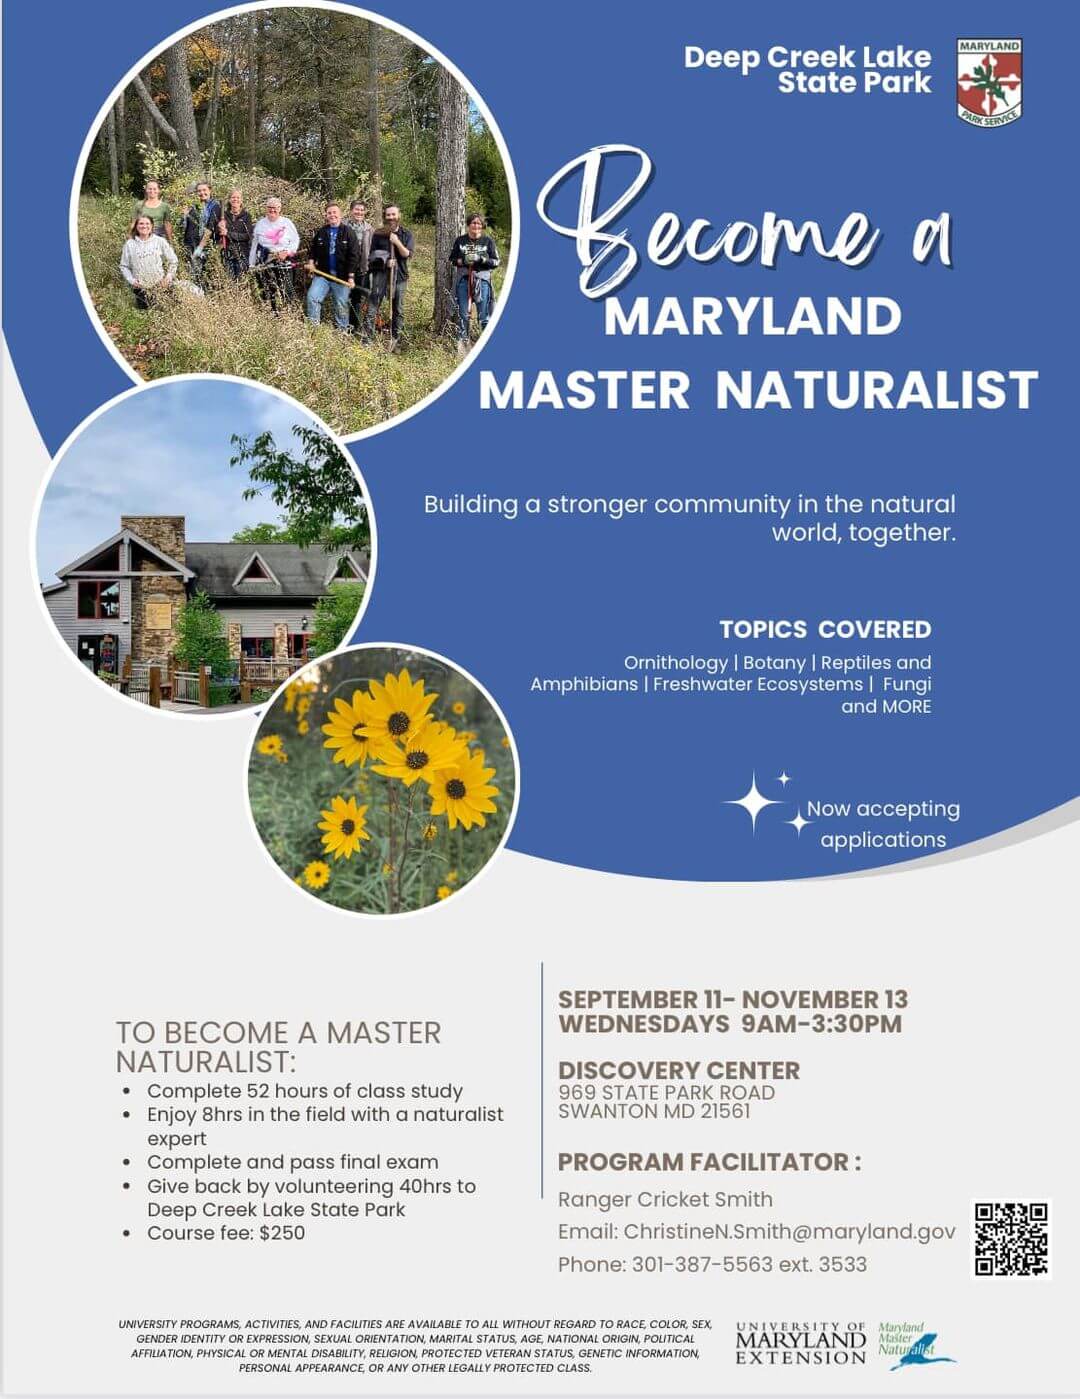 Become a Maryland Master Naturalist at Deep Creek Lake, MD